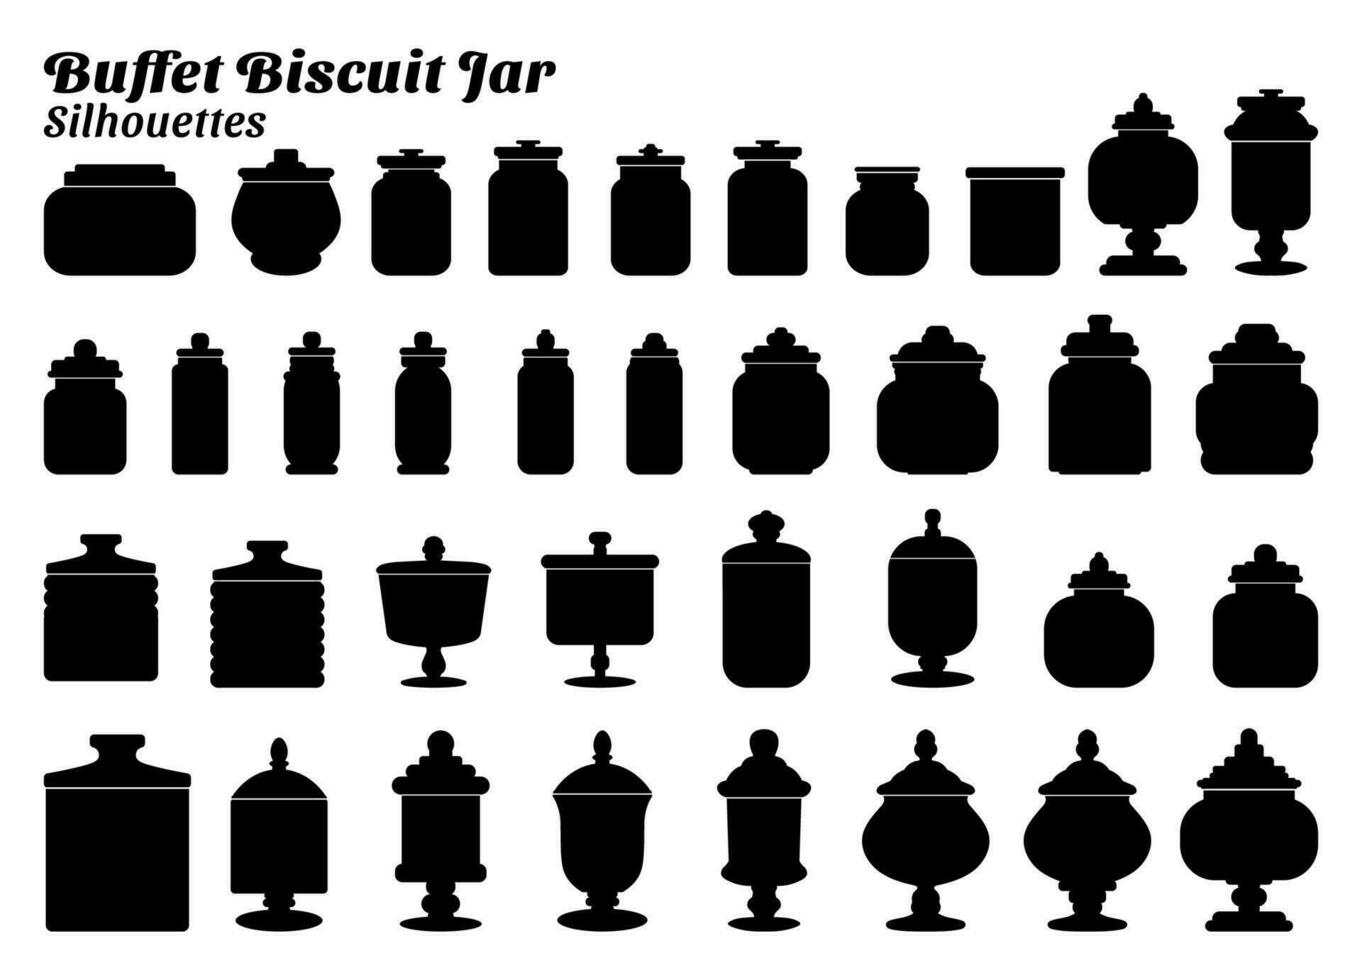 verzameling van silhouet vector illustraties van buffet biscuit pot